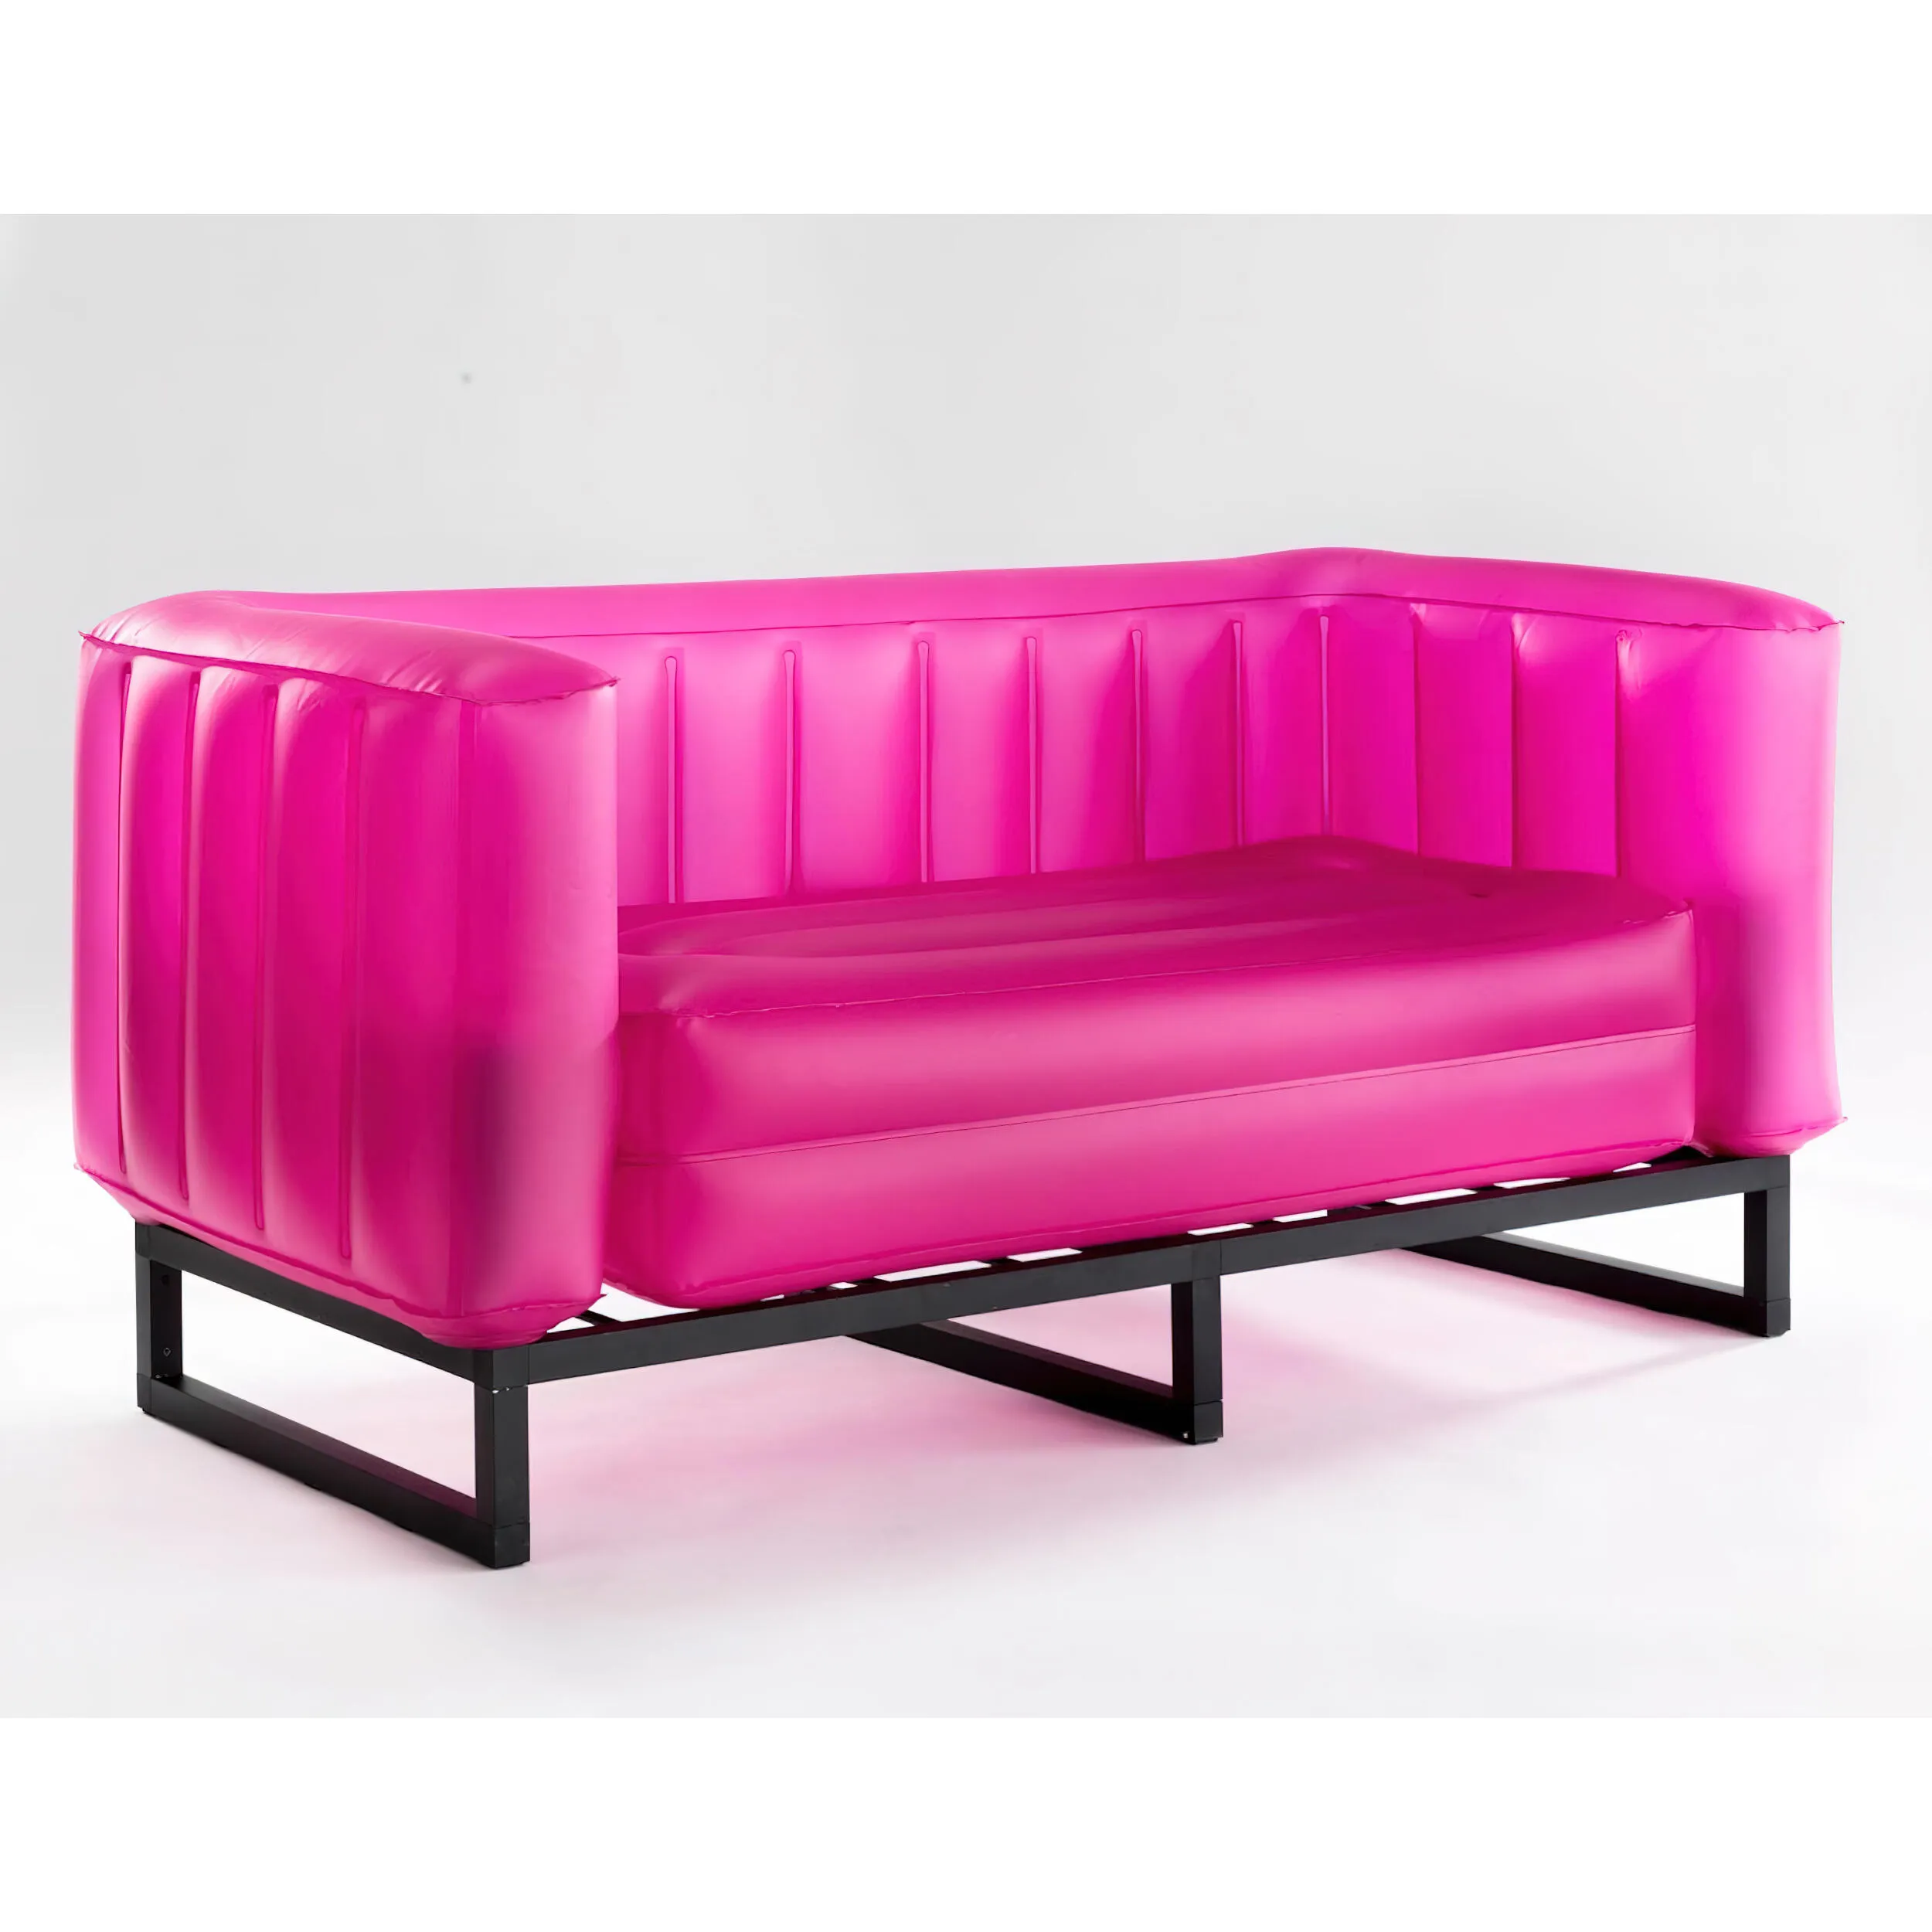 divano Yomi eko illuminato struttura in legno nero, dimensioni 76x151xH69 cm peso 14,8 kg, seduta gonfiabile in TPU colore rosa traslucido